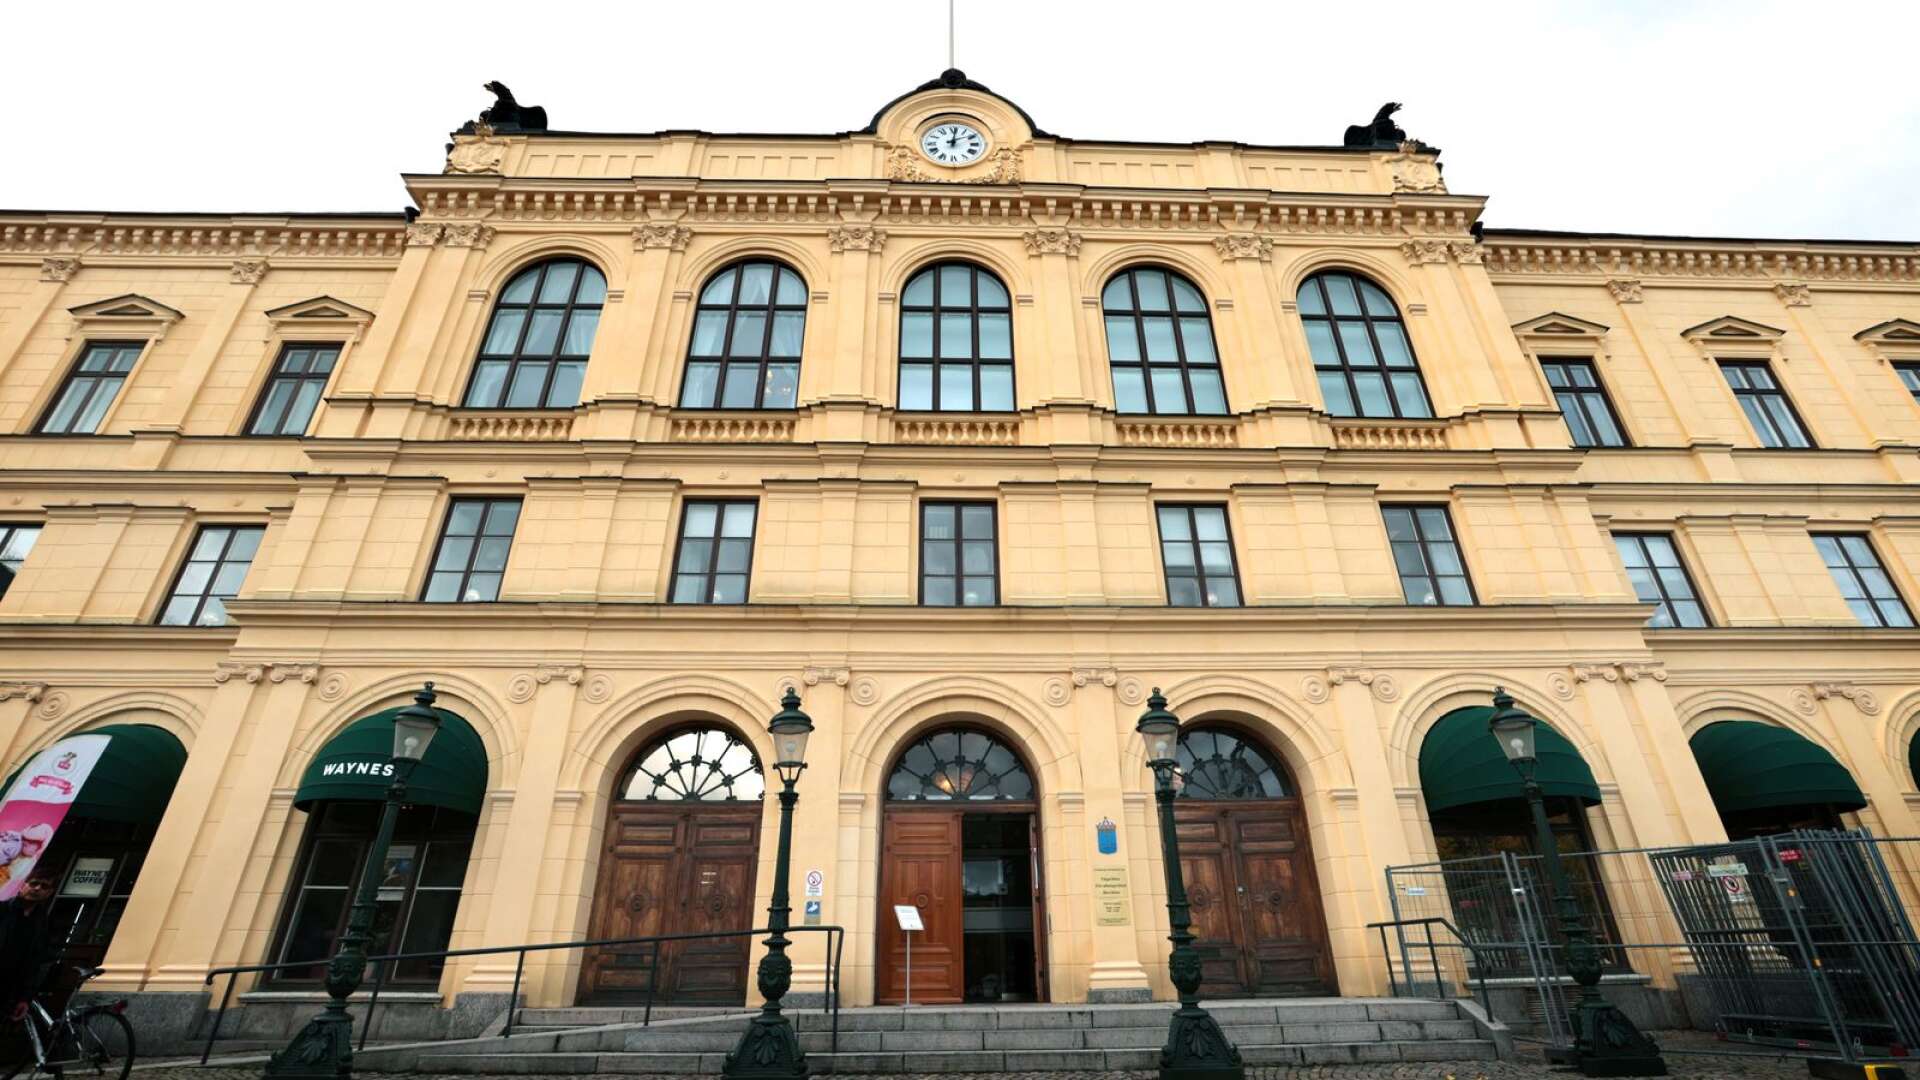 På fredagen dömdes mannen vid Värmlands tingsrätt. Han döms till fängelse efter att ha misshandlat och våldtagit en kvinna.